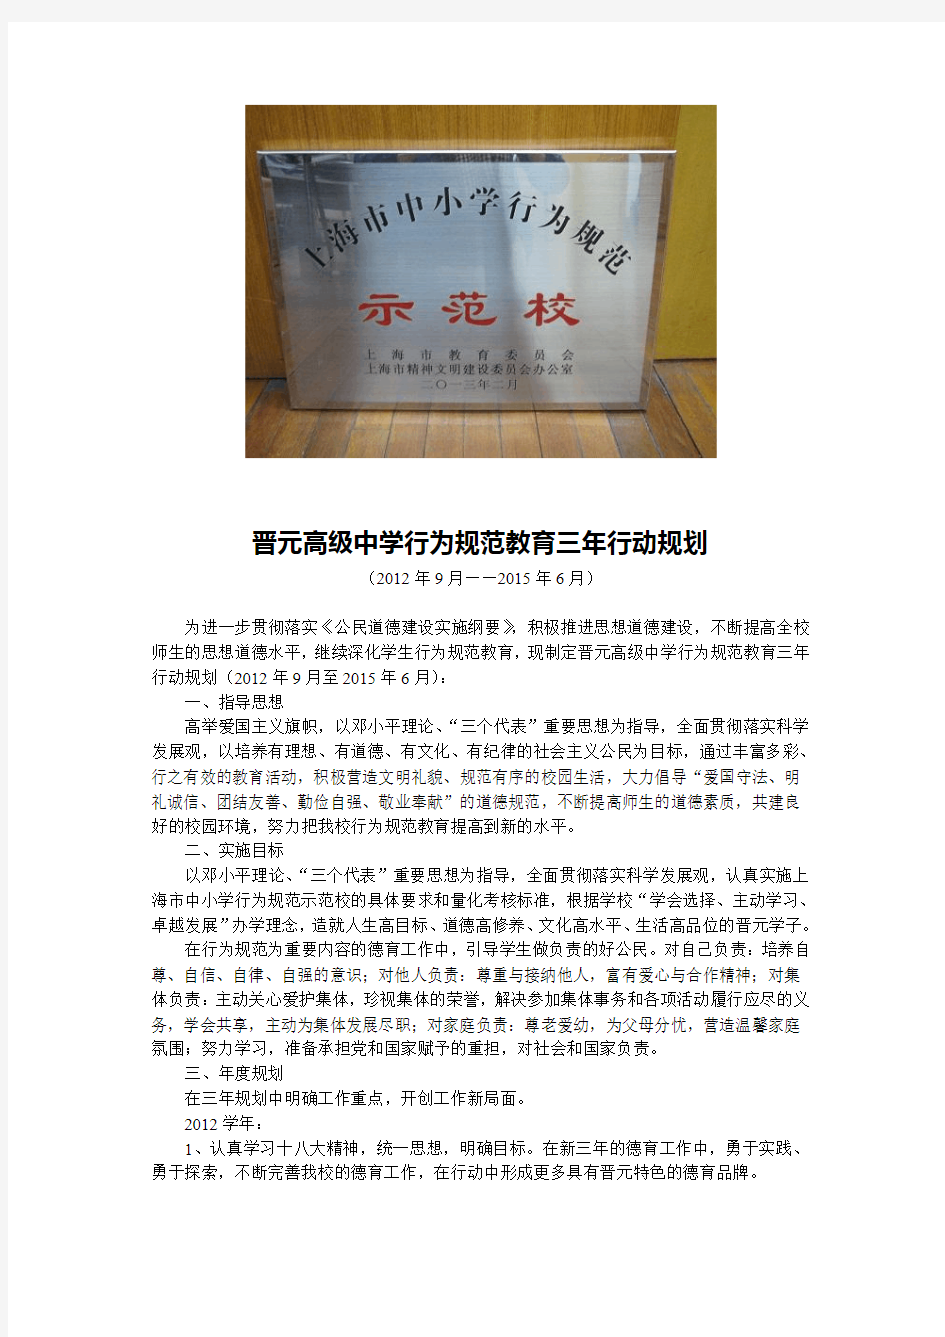 晋元高级中学行为规范教育三年行动规划-上海晋元高级中学